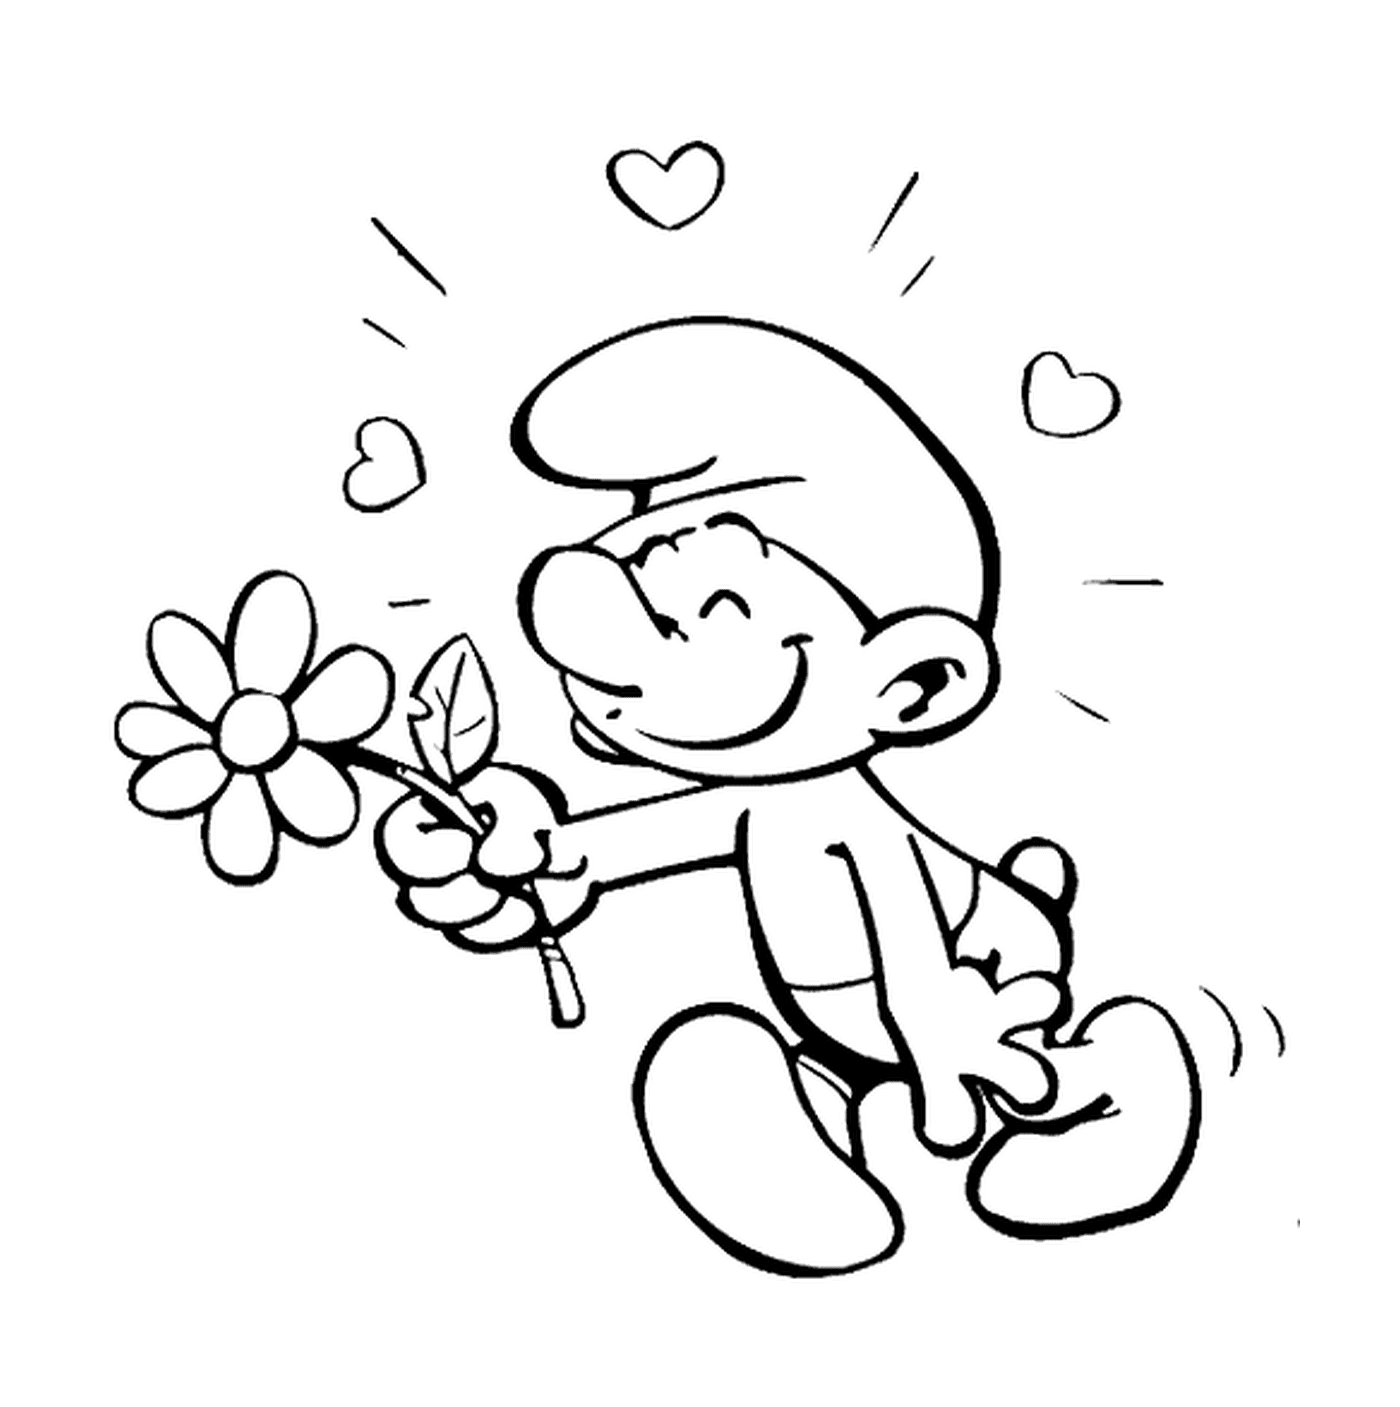  A love schtumpf holds a flower 